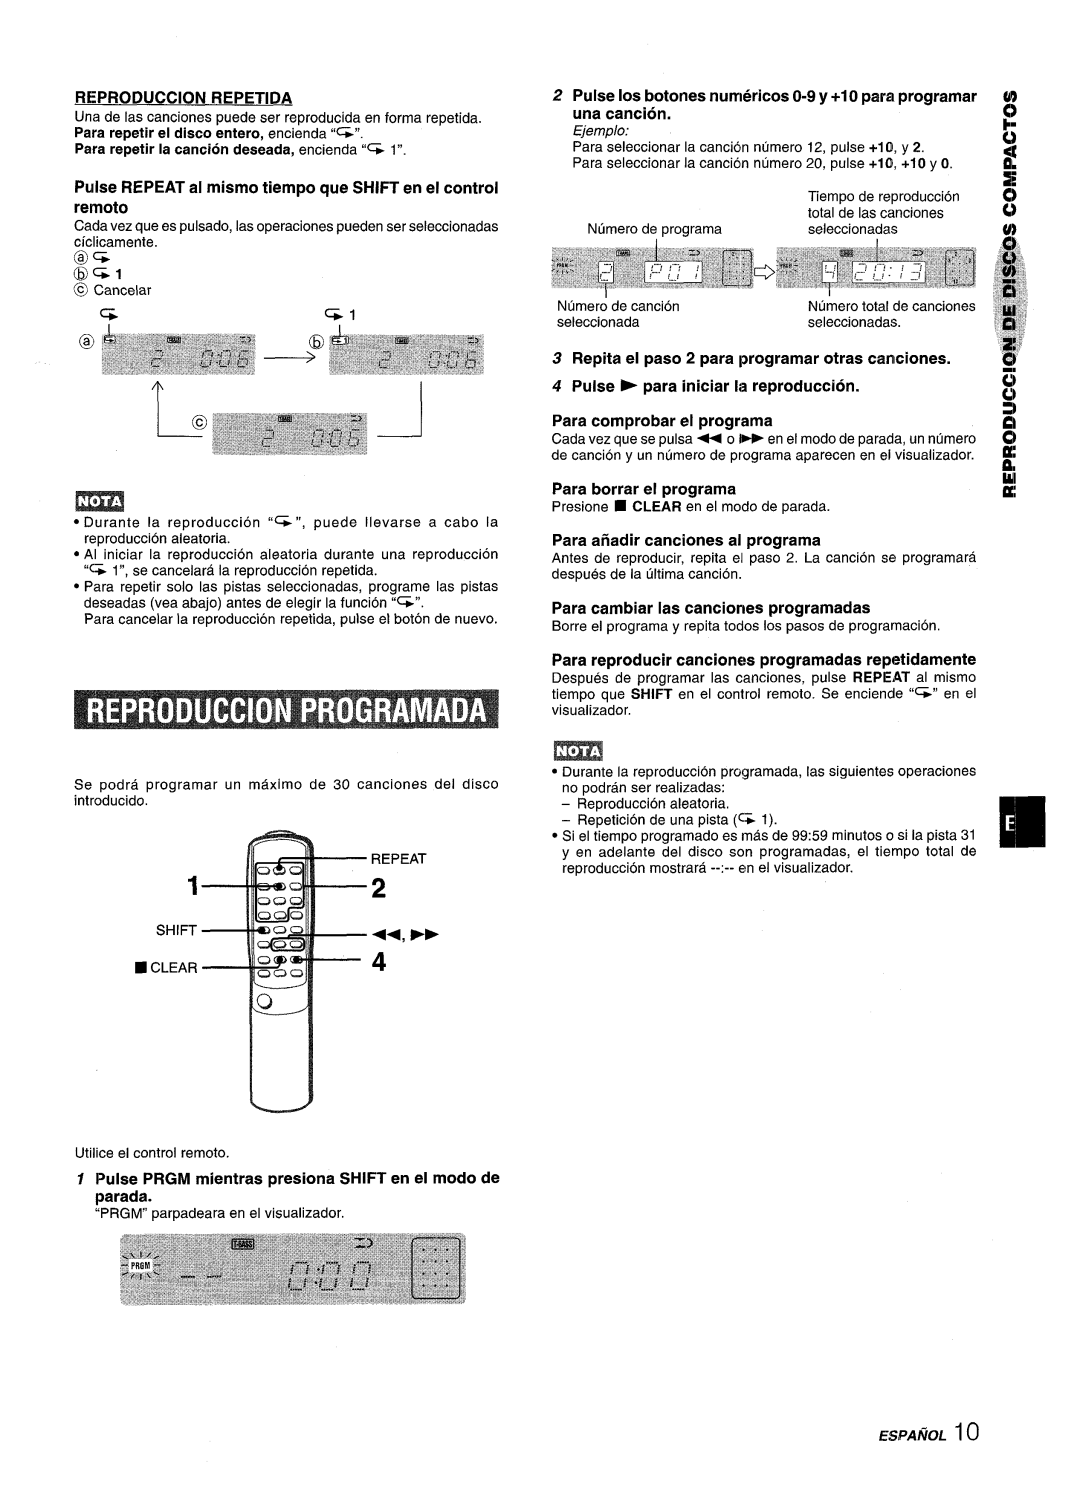 Aiwa XM-M25 manual ‘1’I, Reproduction Repetida, Pulse REPEAT al mismo tiempo que SHIFT en el control remoto, Ejemplo 